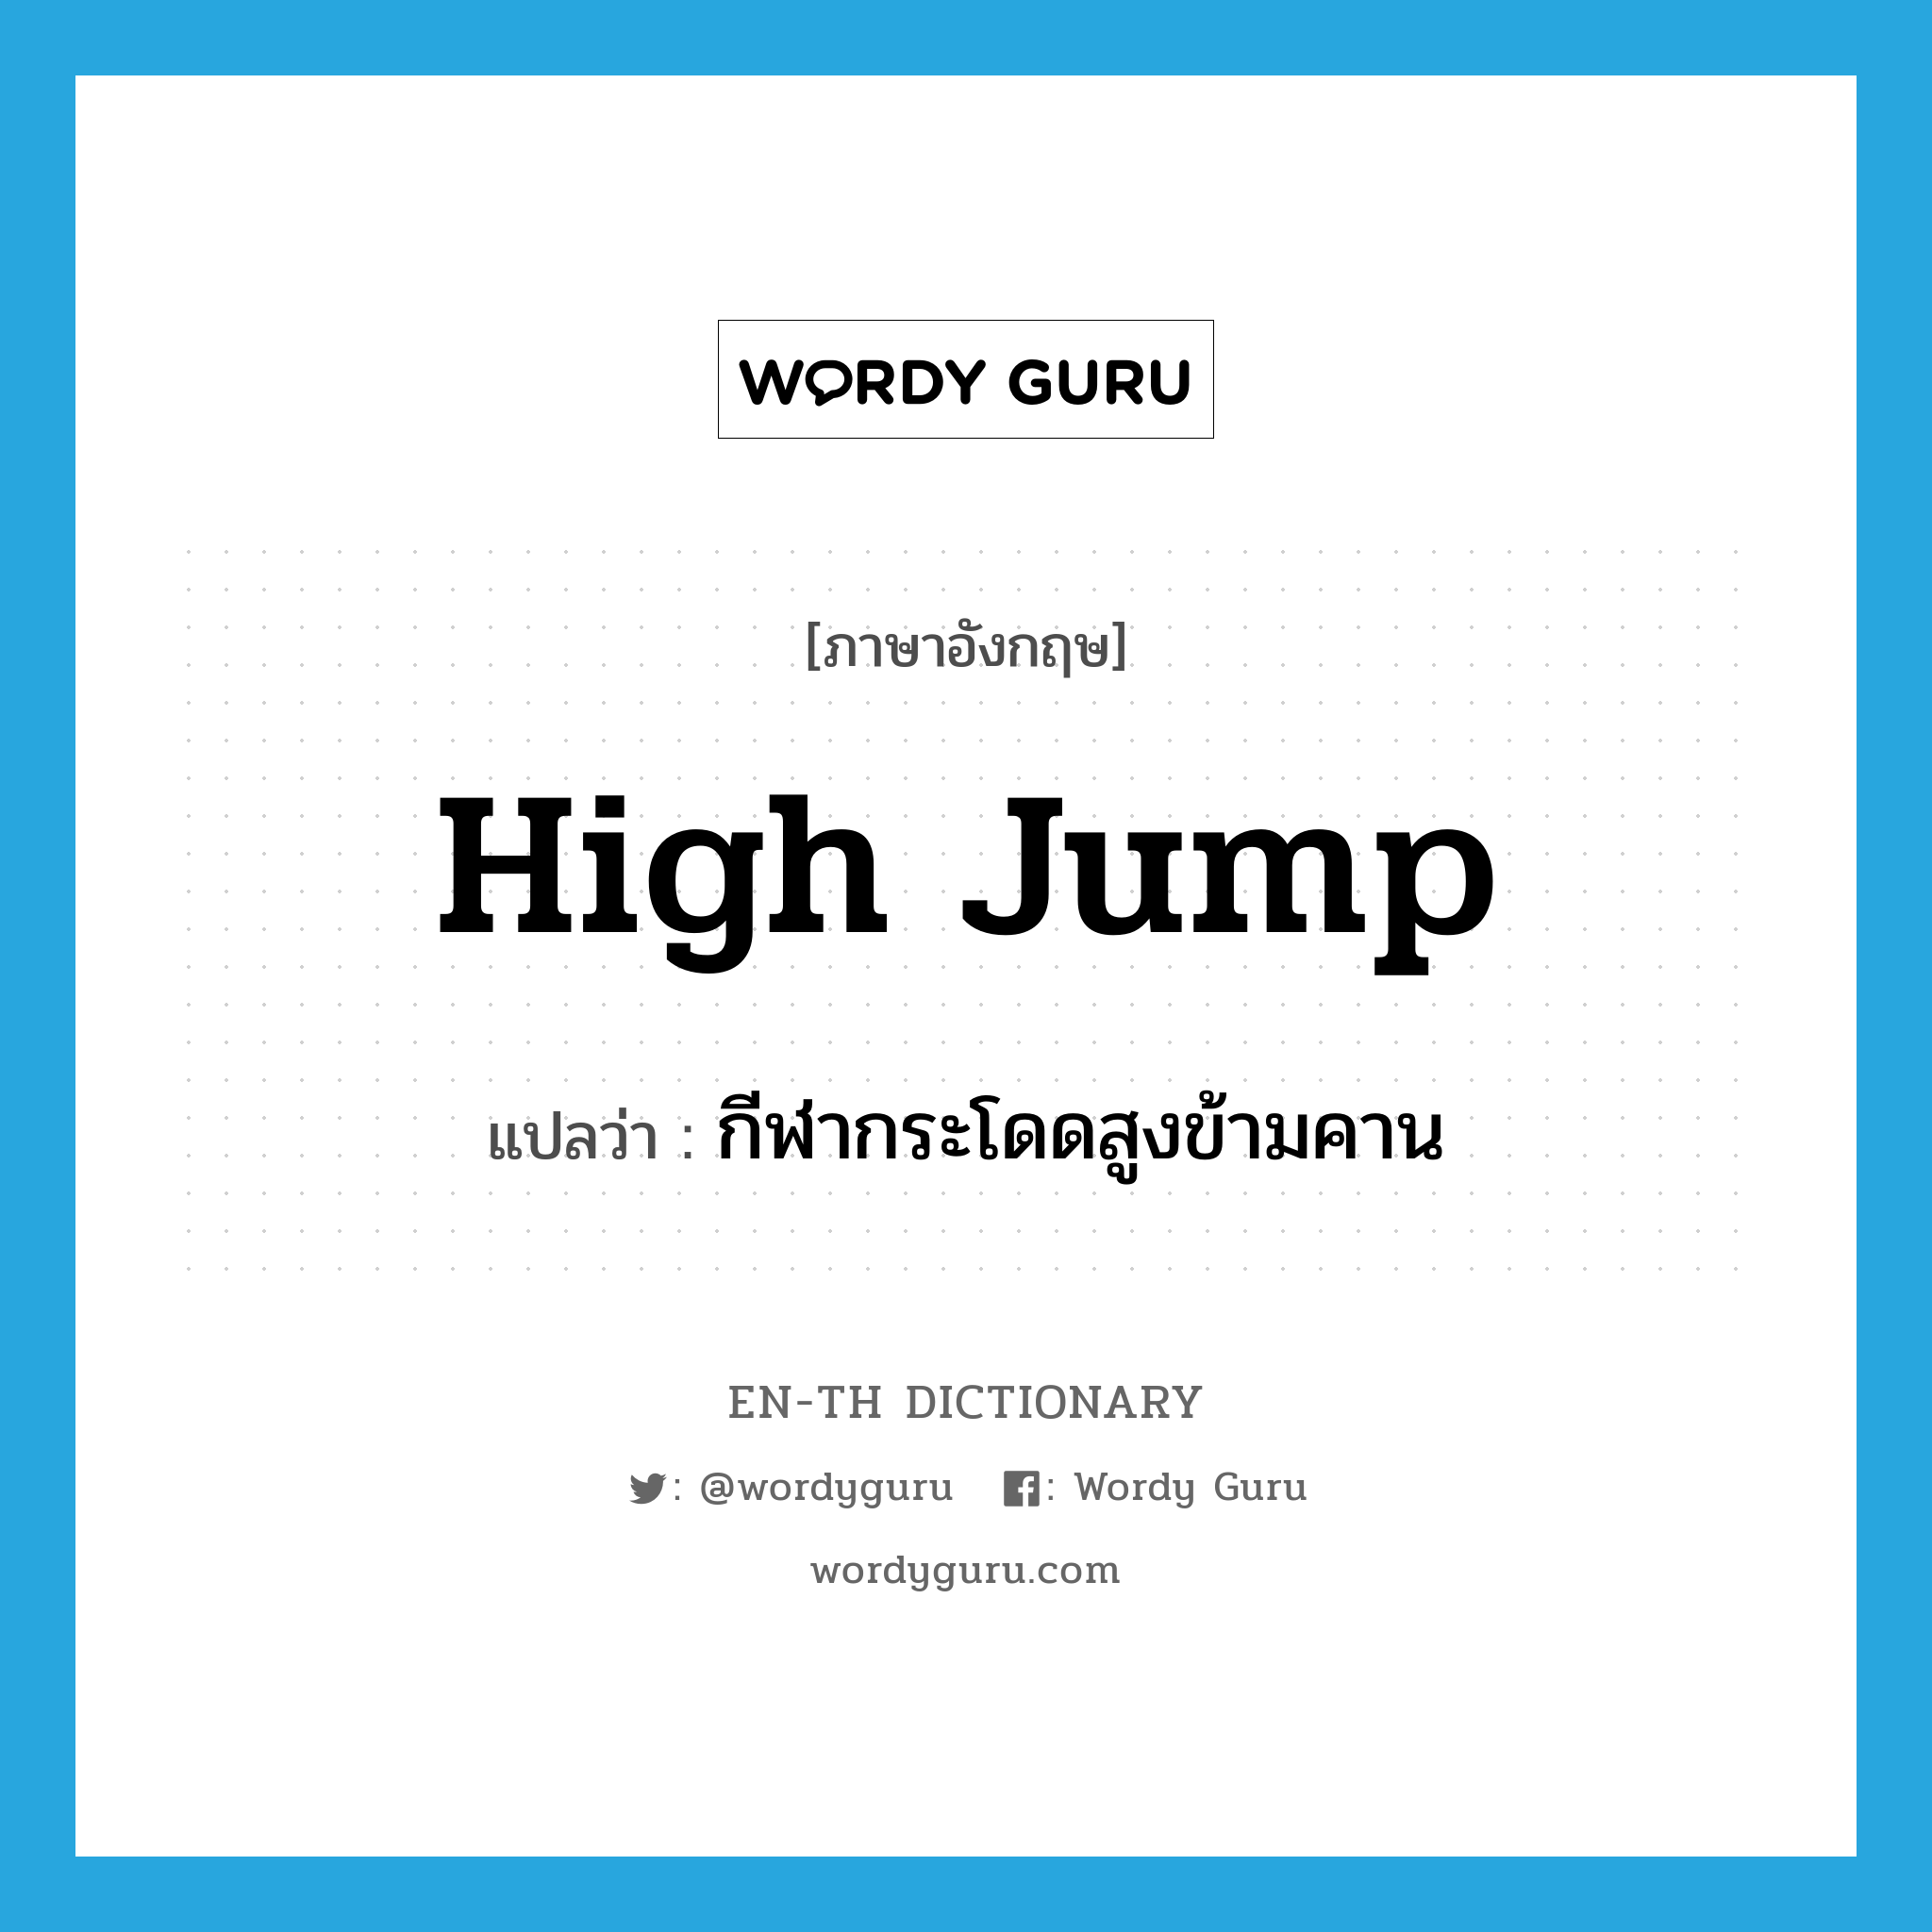 กีฬากระโดดสูงข้ามคาน ภาษาอังกฤษ?, คำศัพท์ภาษาอังกฤษ กีฬากระโดดสูงข้ามคาน แปลว่า high jump ประเภท N หมวด N